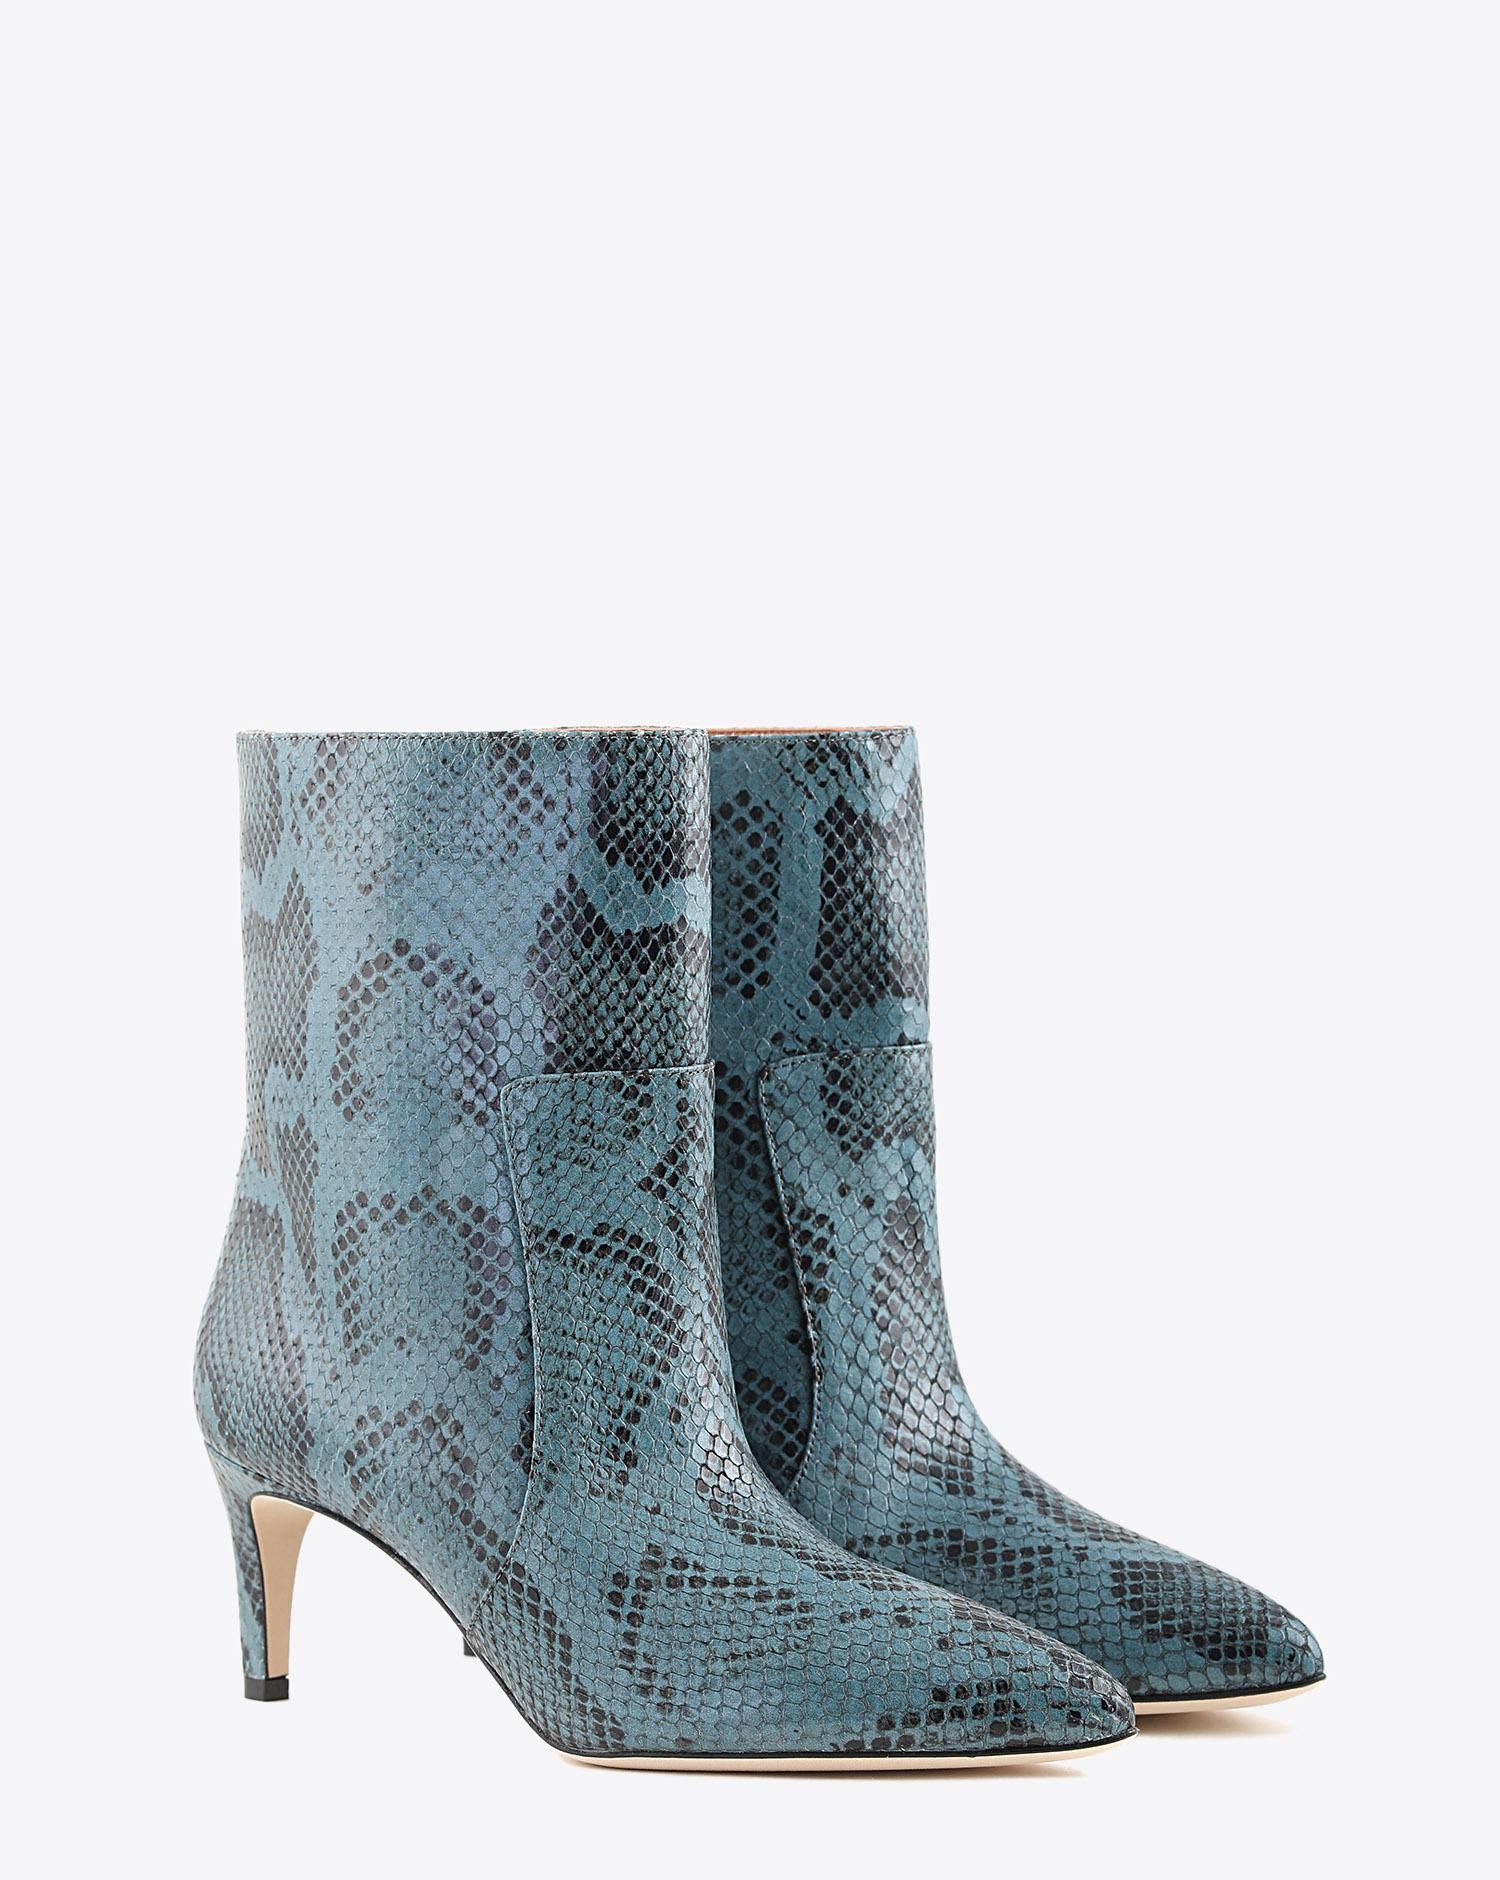 Paris Texas Pré-Collection Boots Imprimé Serpent - Grigio Azzurro  